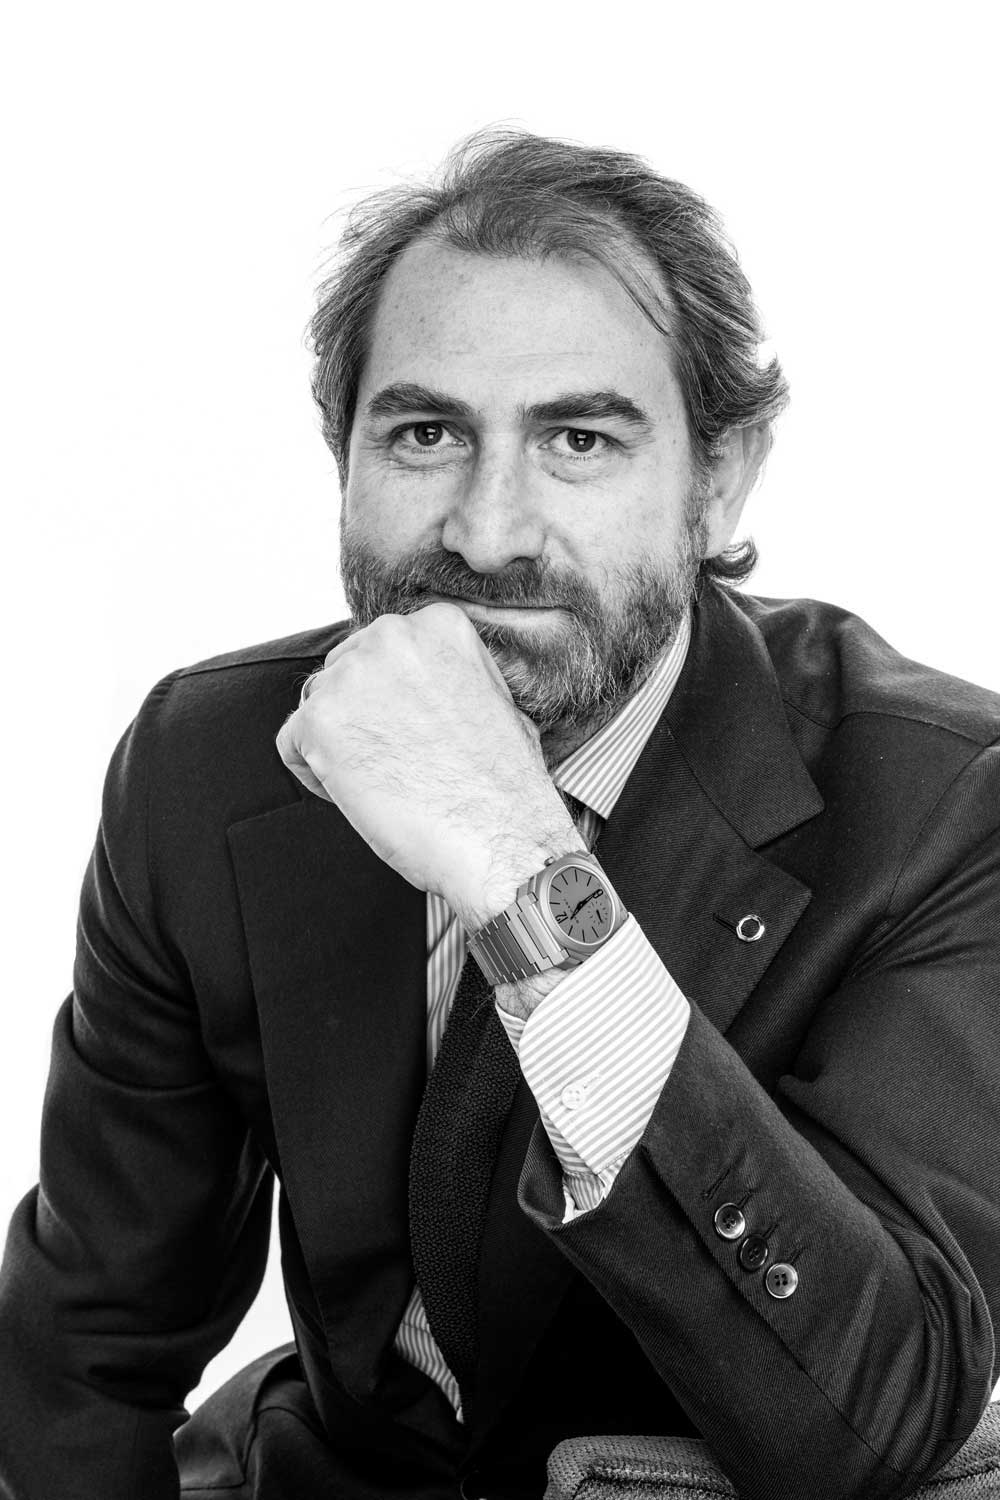 Antoine Pin, Managing Director of Bvlgari’s Watch Division